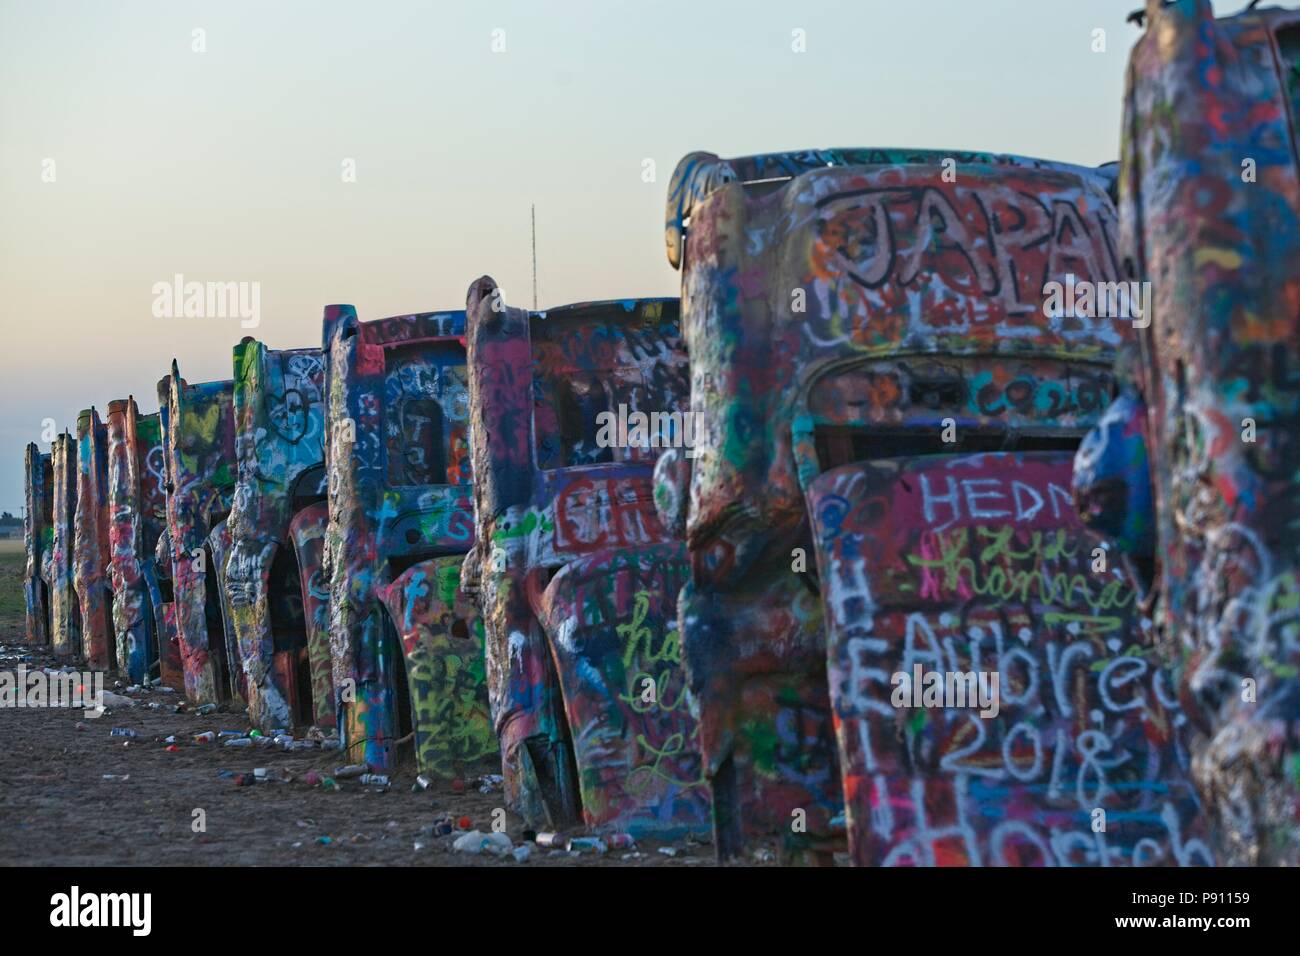 Nach einzigartigen und individuellen Cadillac Ranch bei Amarillo Texas ist jetzt ein trauriges Denkmal für Vandalismus, Graffiti, Müll und Zerstörung Stockfoto